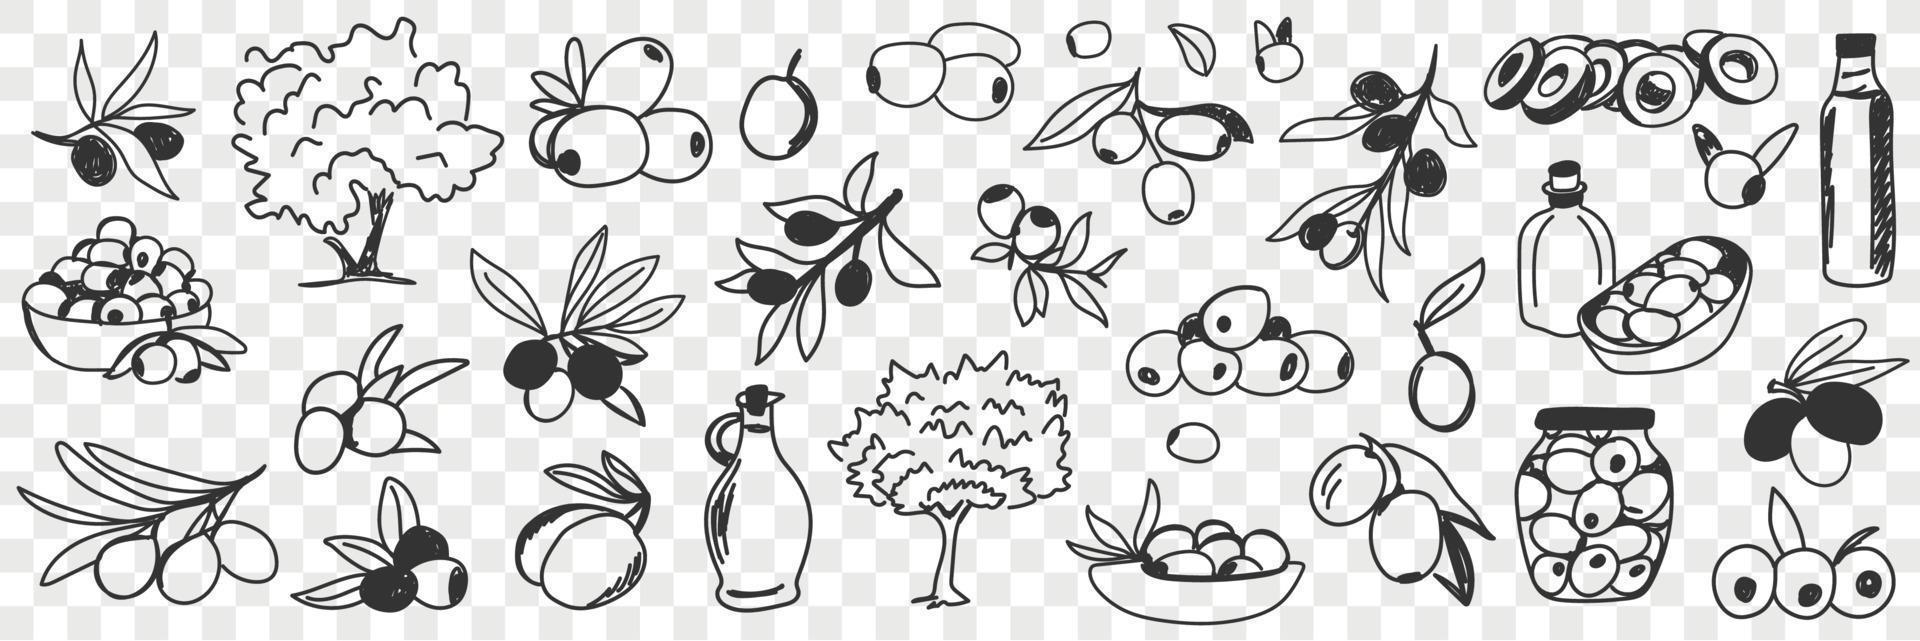 Olive Öl Produktion Gekritzel Satz. Sammlung von Hand gezeichnet verschiedene Olive Bäume Früchte Öl Flaschen und Gläser zum Essen und Kochen im Reihen isoliert auf transparent Hintergrund vektor